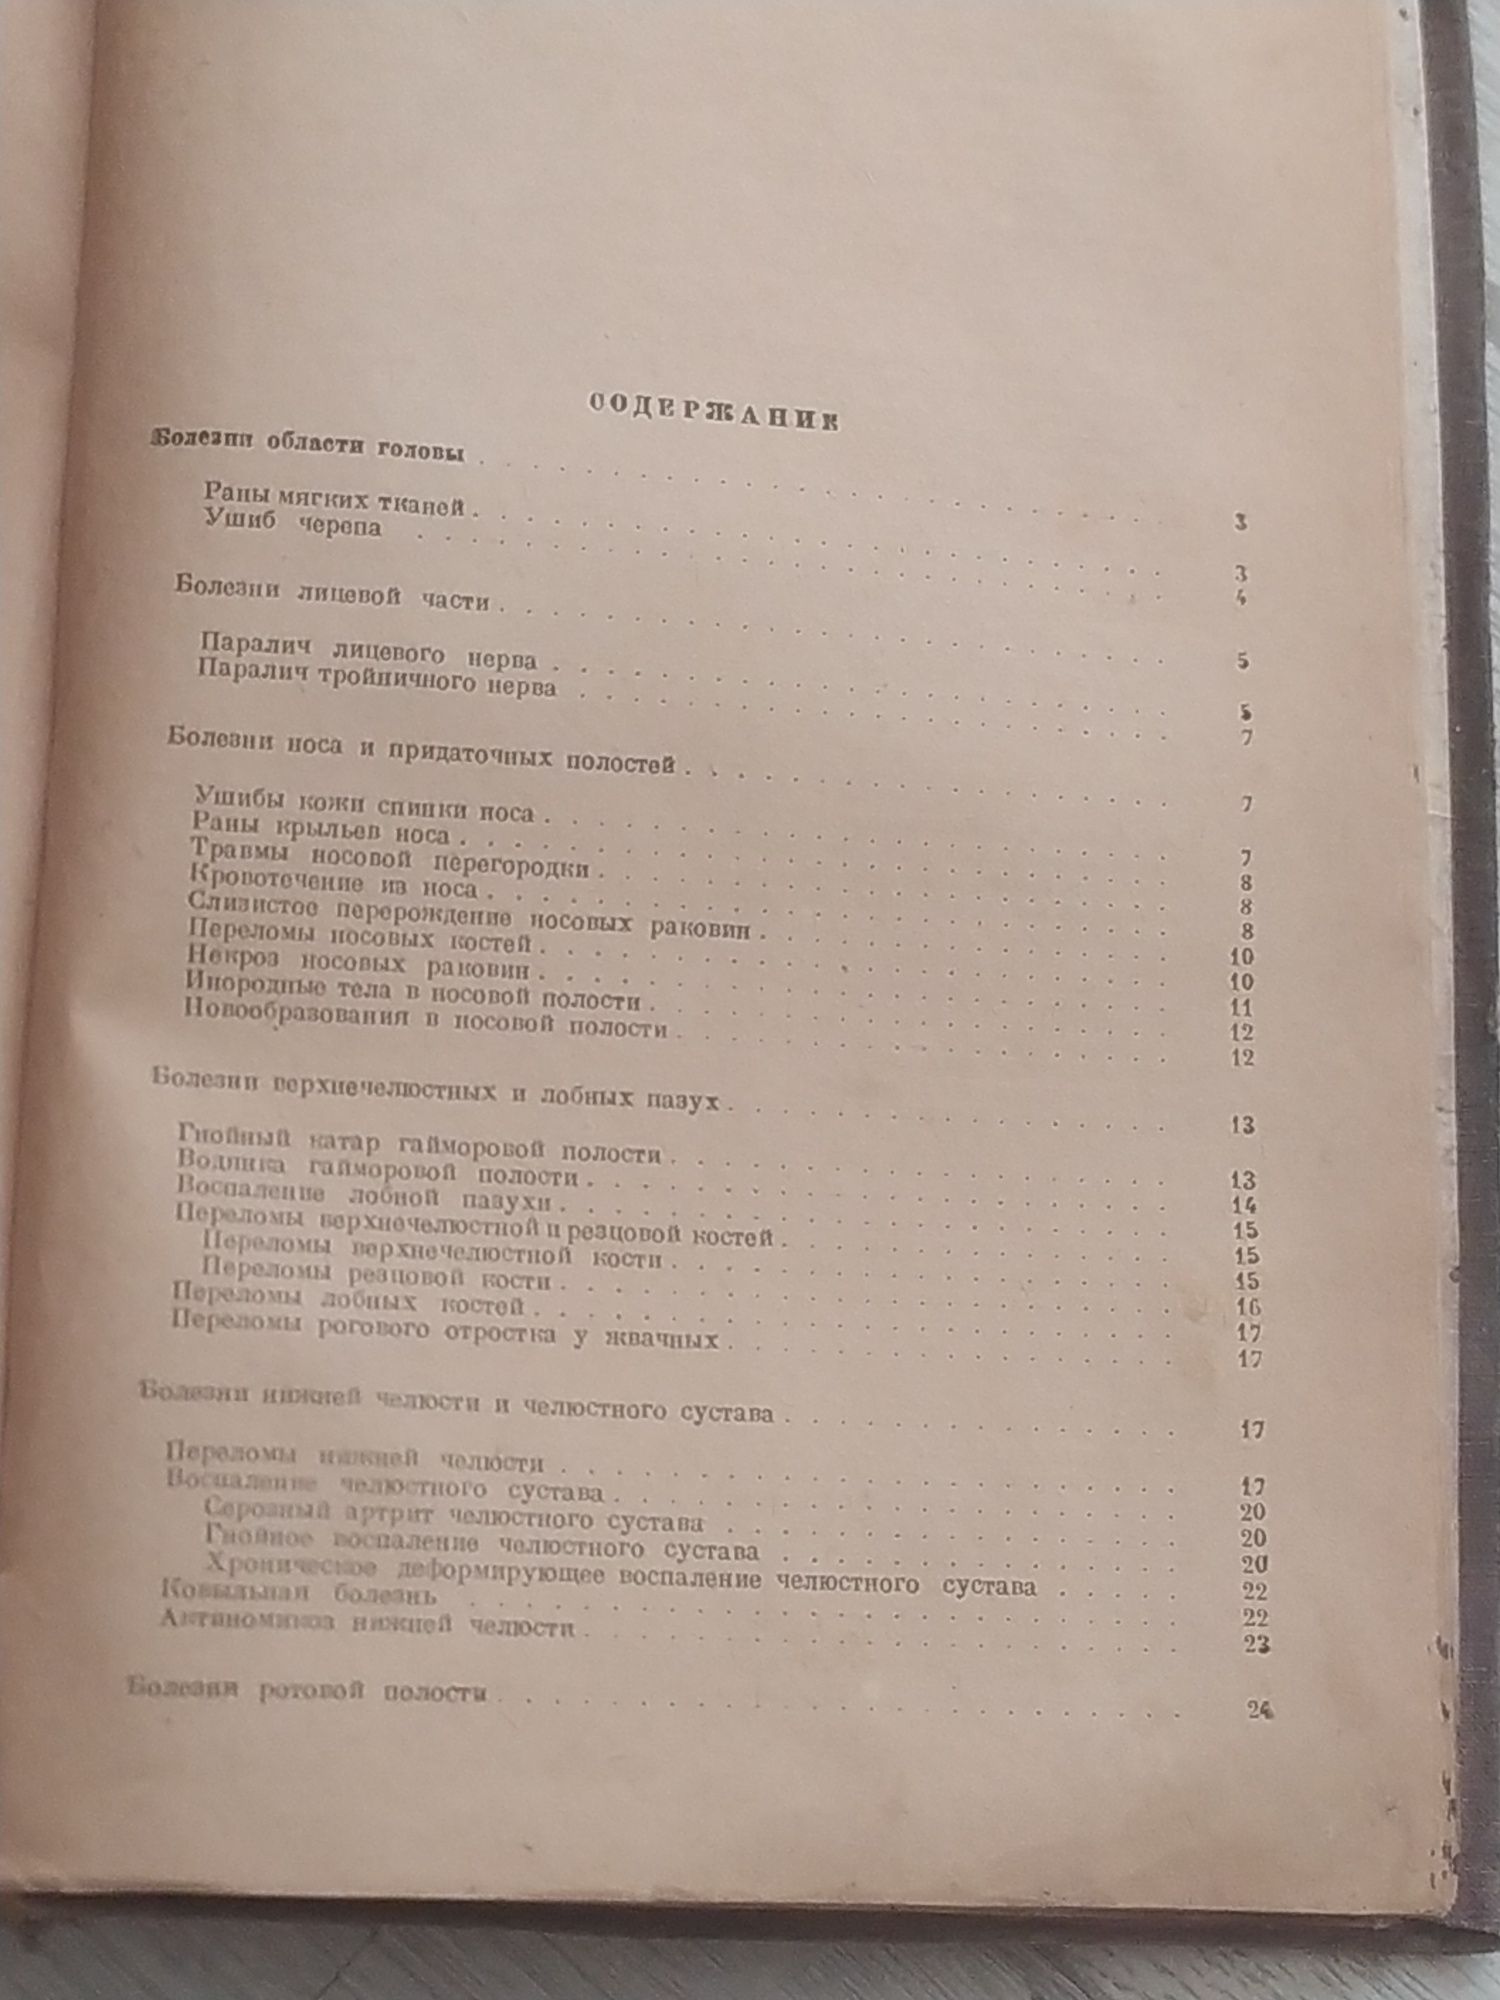 Ю.Е.Давыдов Частная хирургия домашних животных 1947 год.